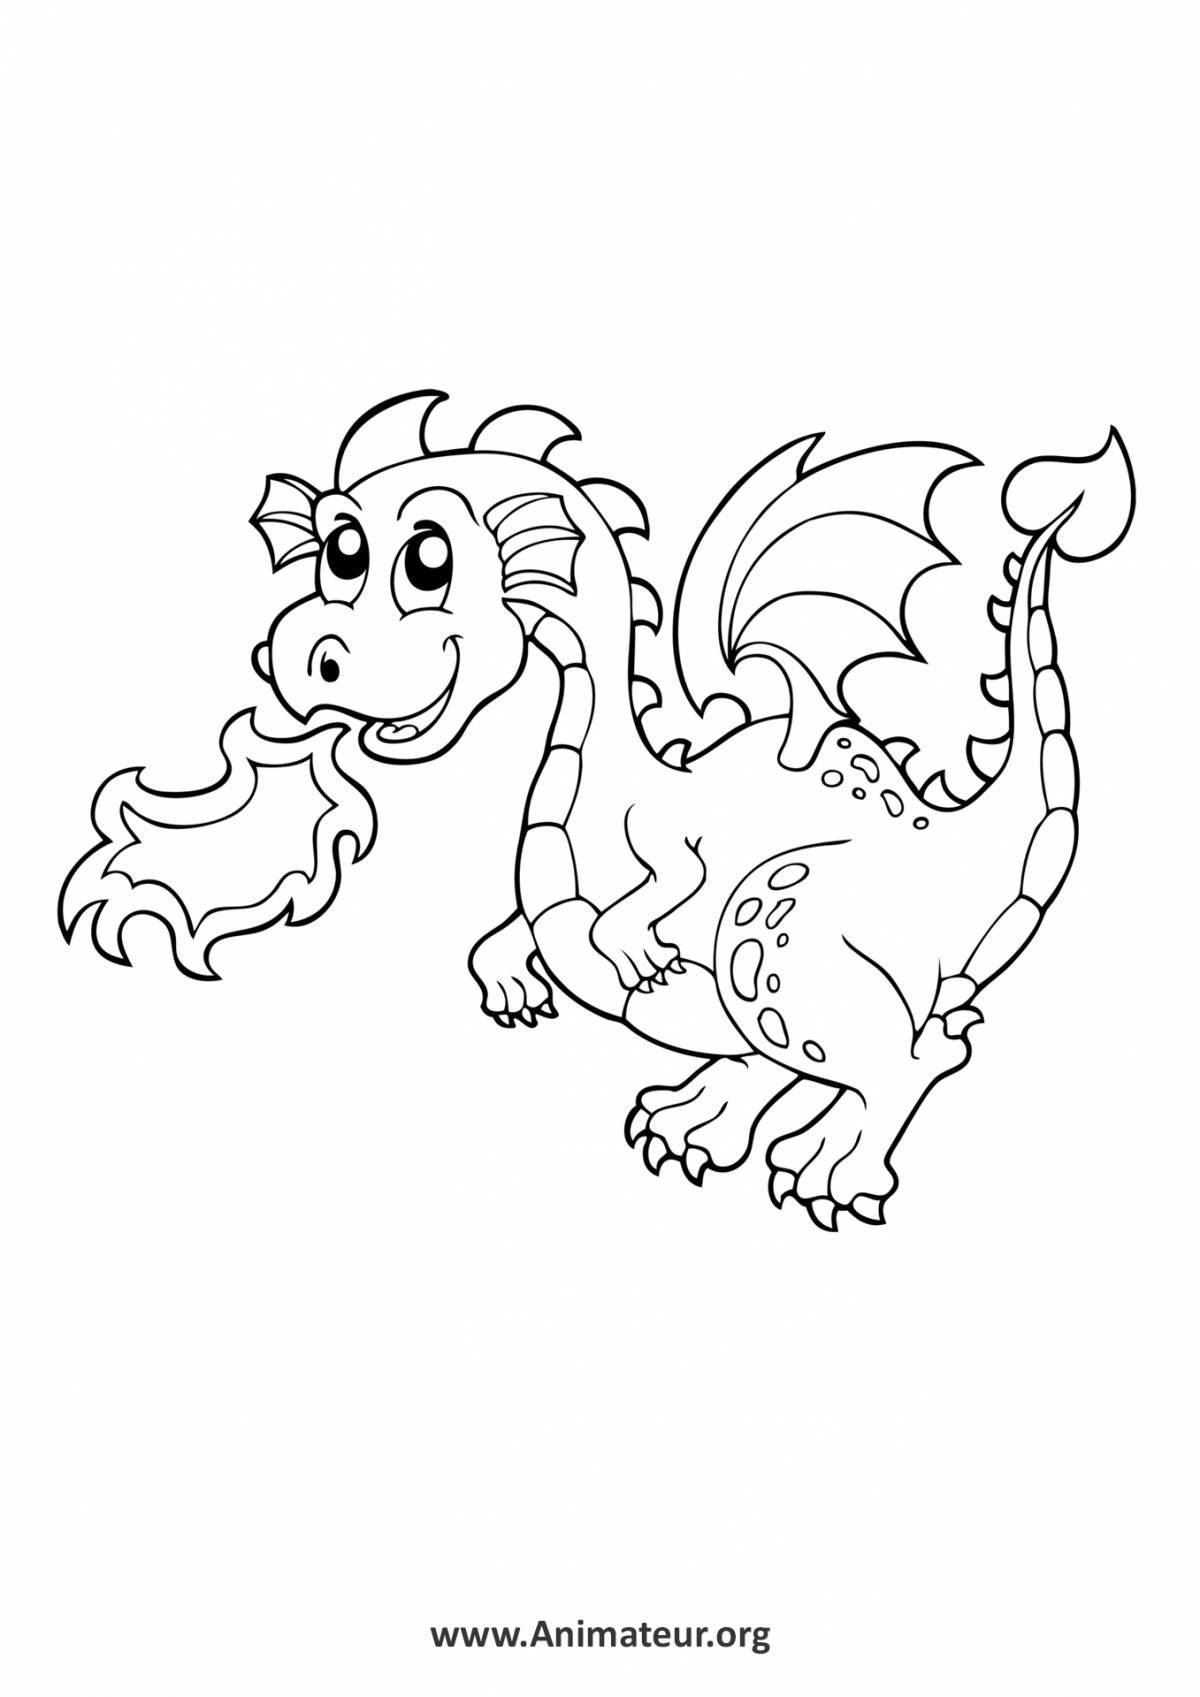 Причудливая раскраска драконы для детей 6-7 лет